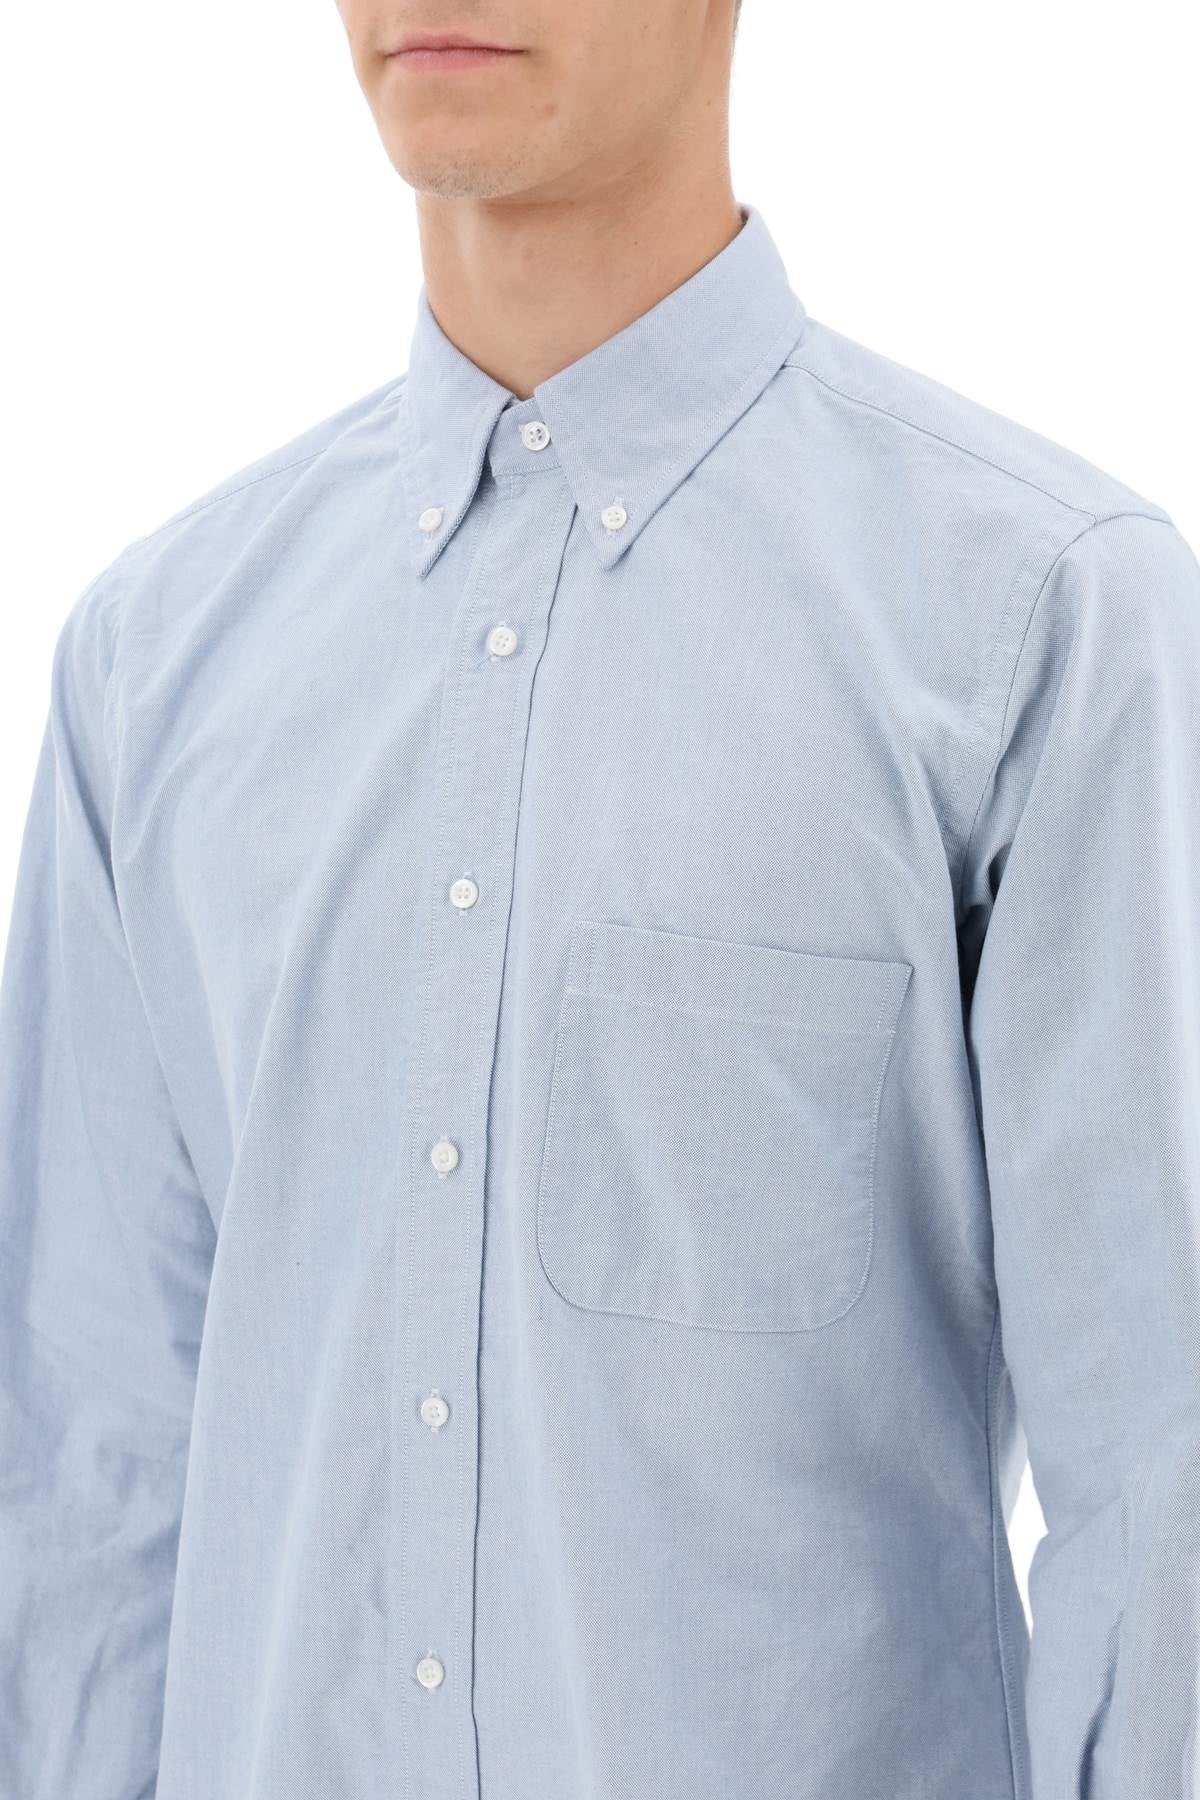 Oxford Cotton Button Down Shirt - 2